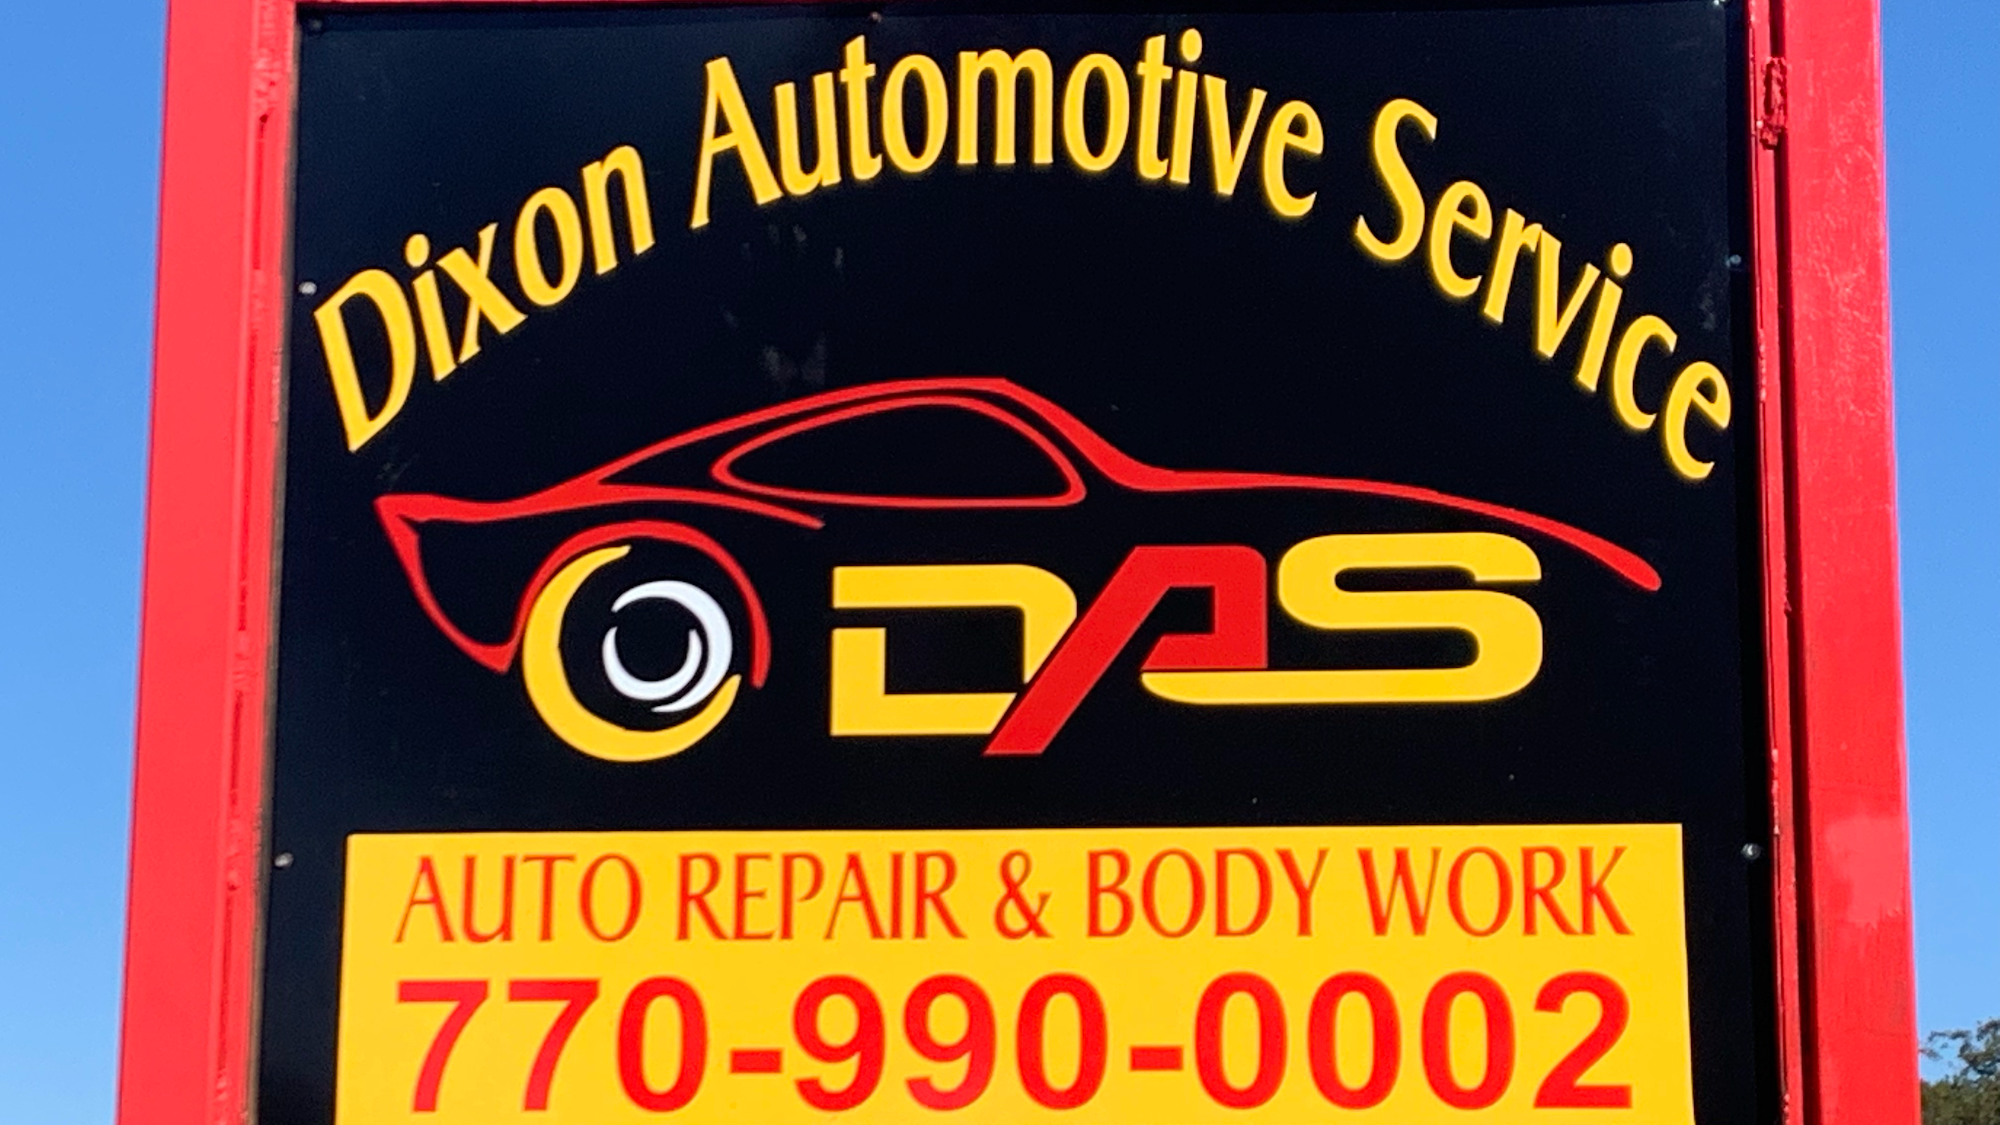 Dixon Automotive Service & towing